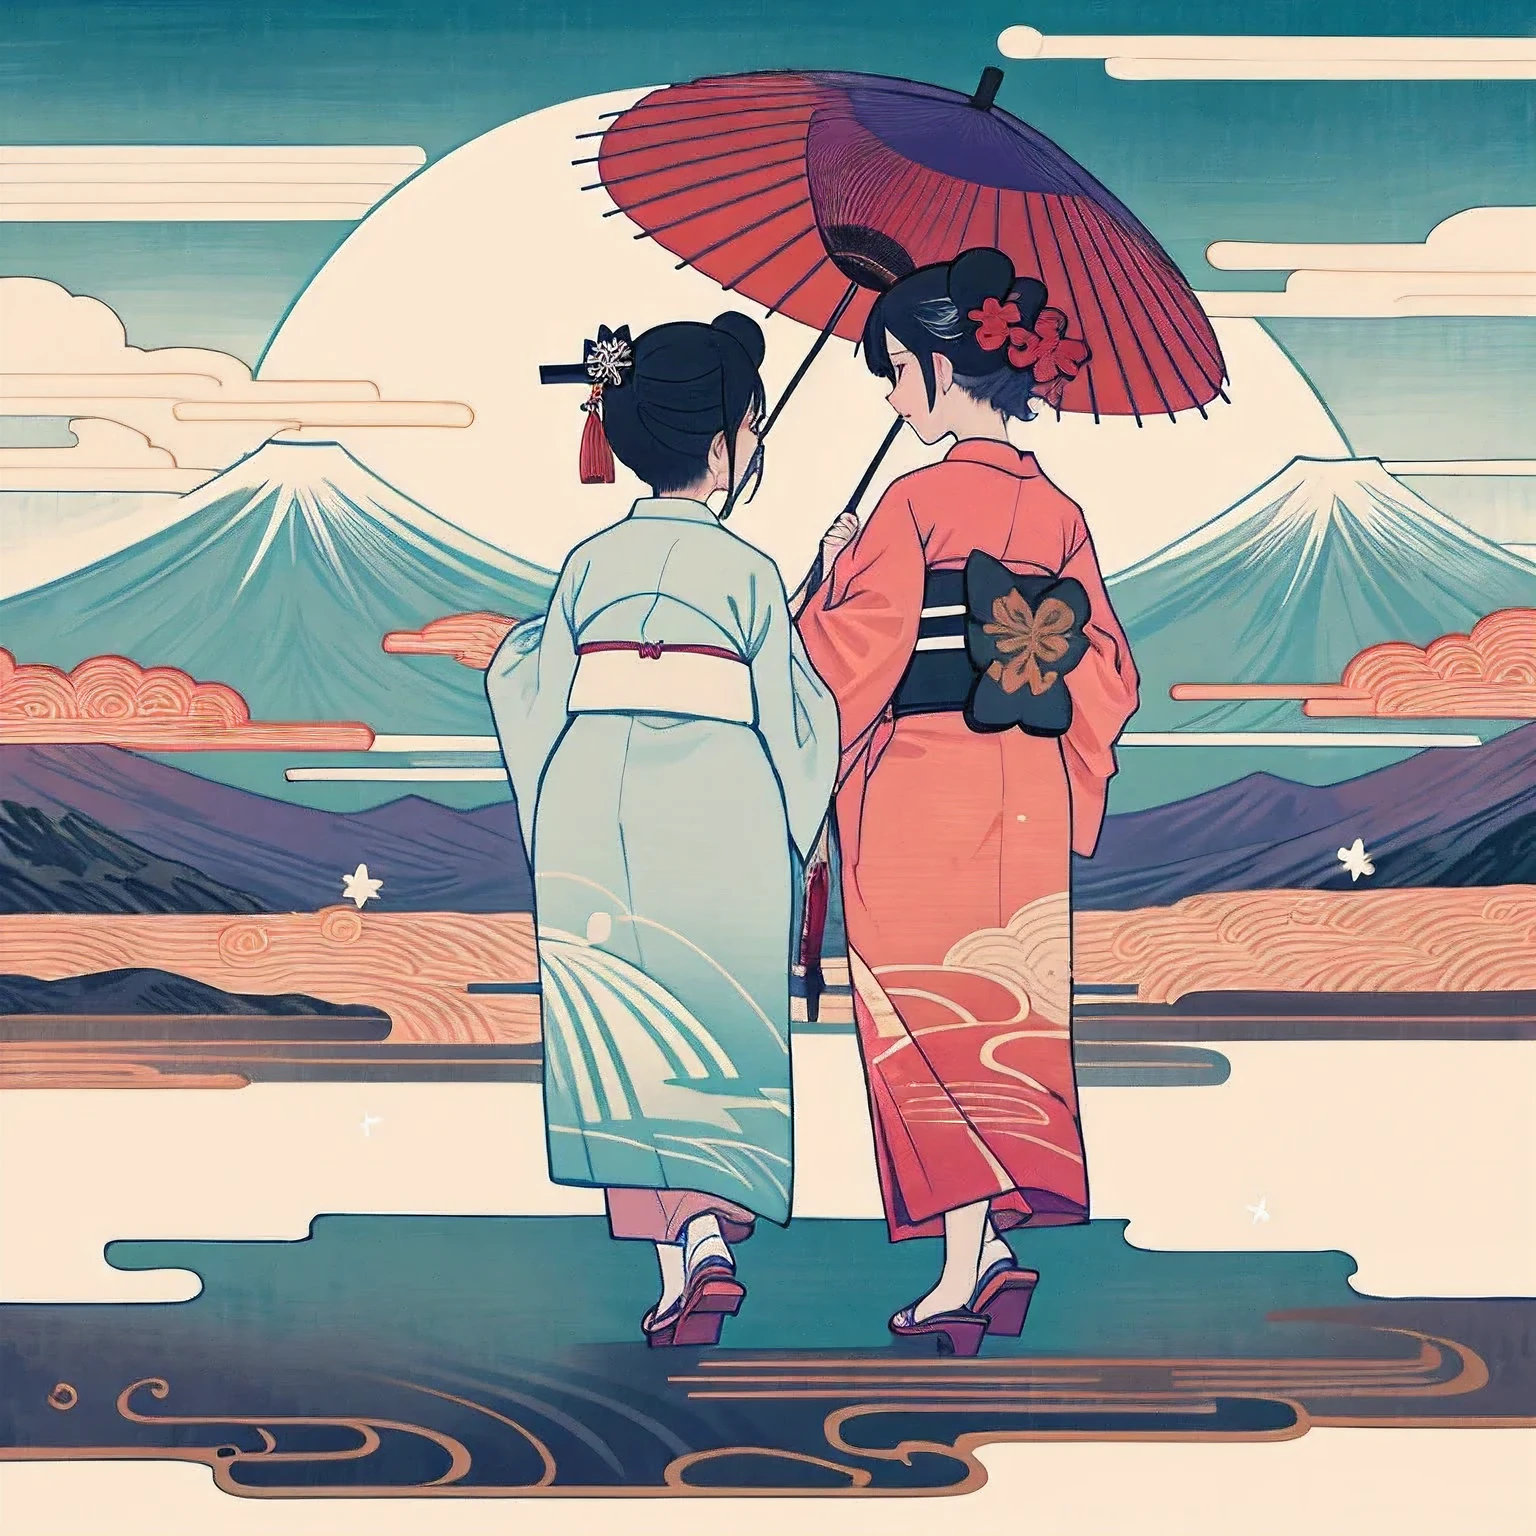 來自京都的舞妓, 兩個人, 穿著和服, 兩個人並んで立って歩いている, 兩個人, 均為女性, 臉被洗白了, 後視圖, 查看 1, 全身角度, 穿著木屐, 打著日本傘散步, 紫色和白色的和服＆穿着红白相间的和服, 背景是巨大的富士山., 閃閃發光、夢幻般的氛圍